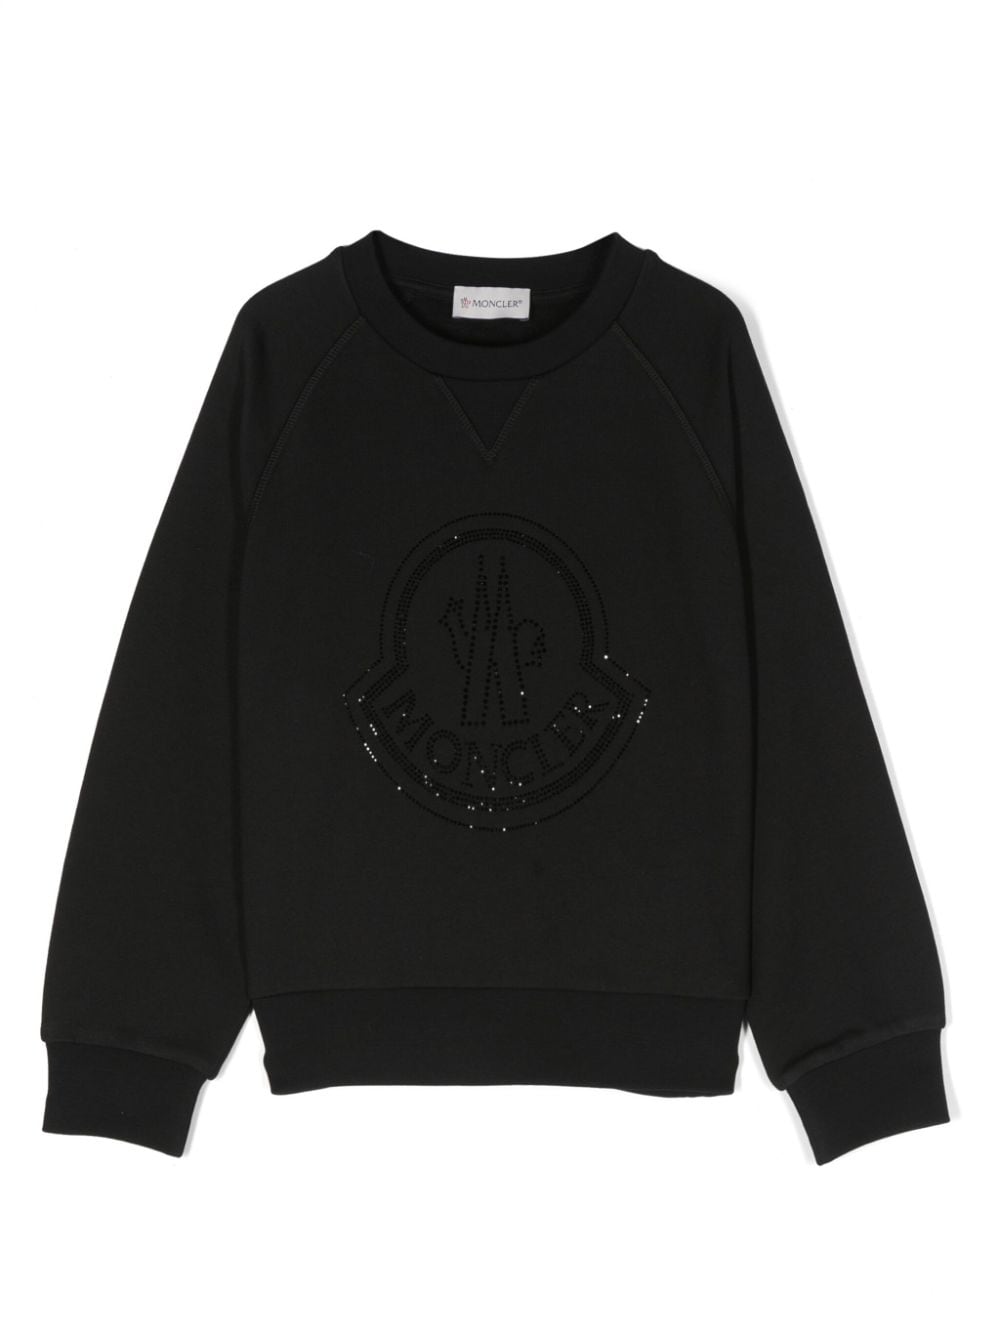 Moncler Enfant rhinestone-embellished cotton sweatshirt - Black von Moncler Enfant